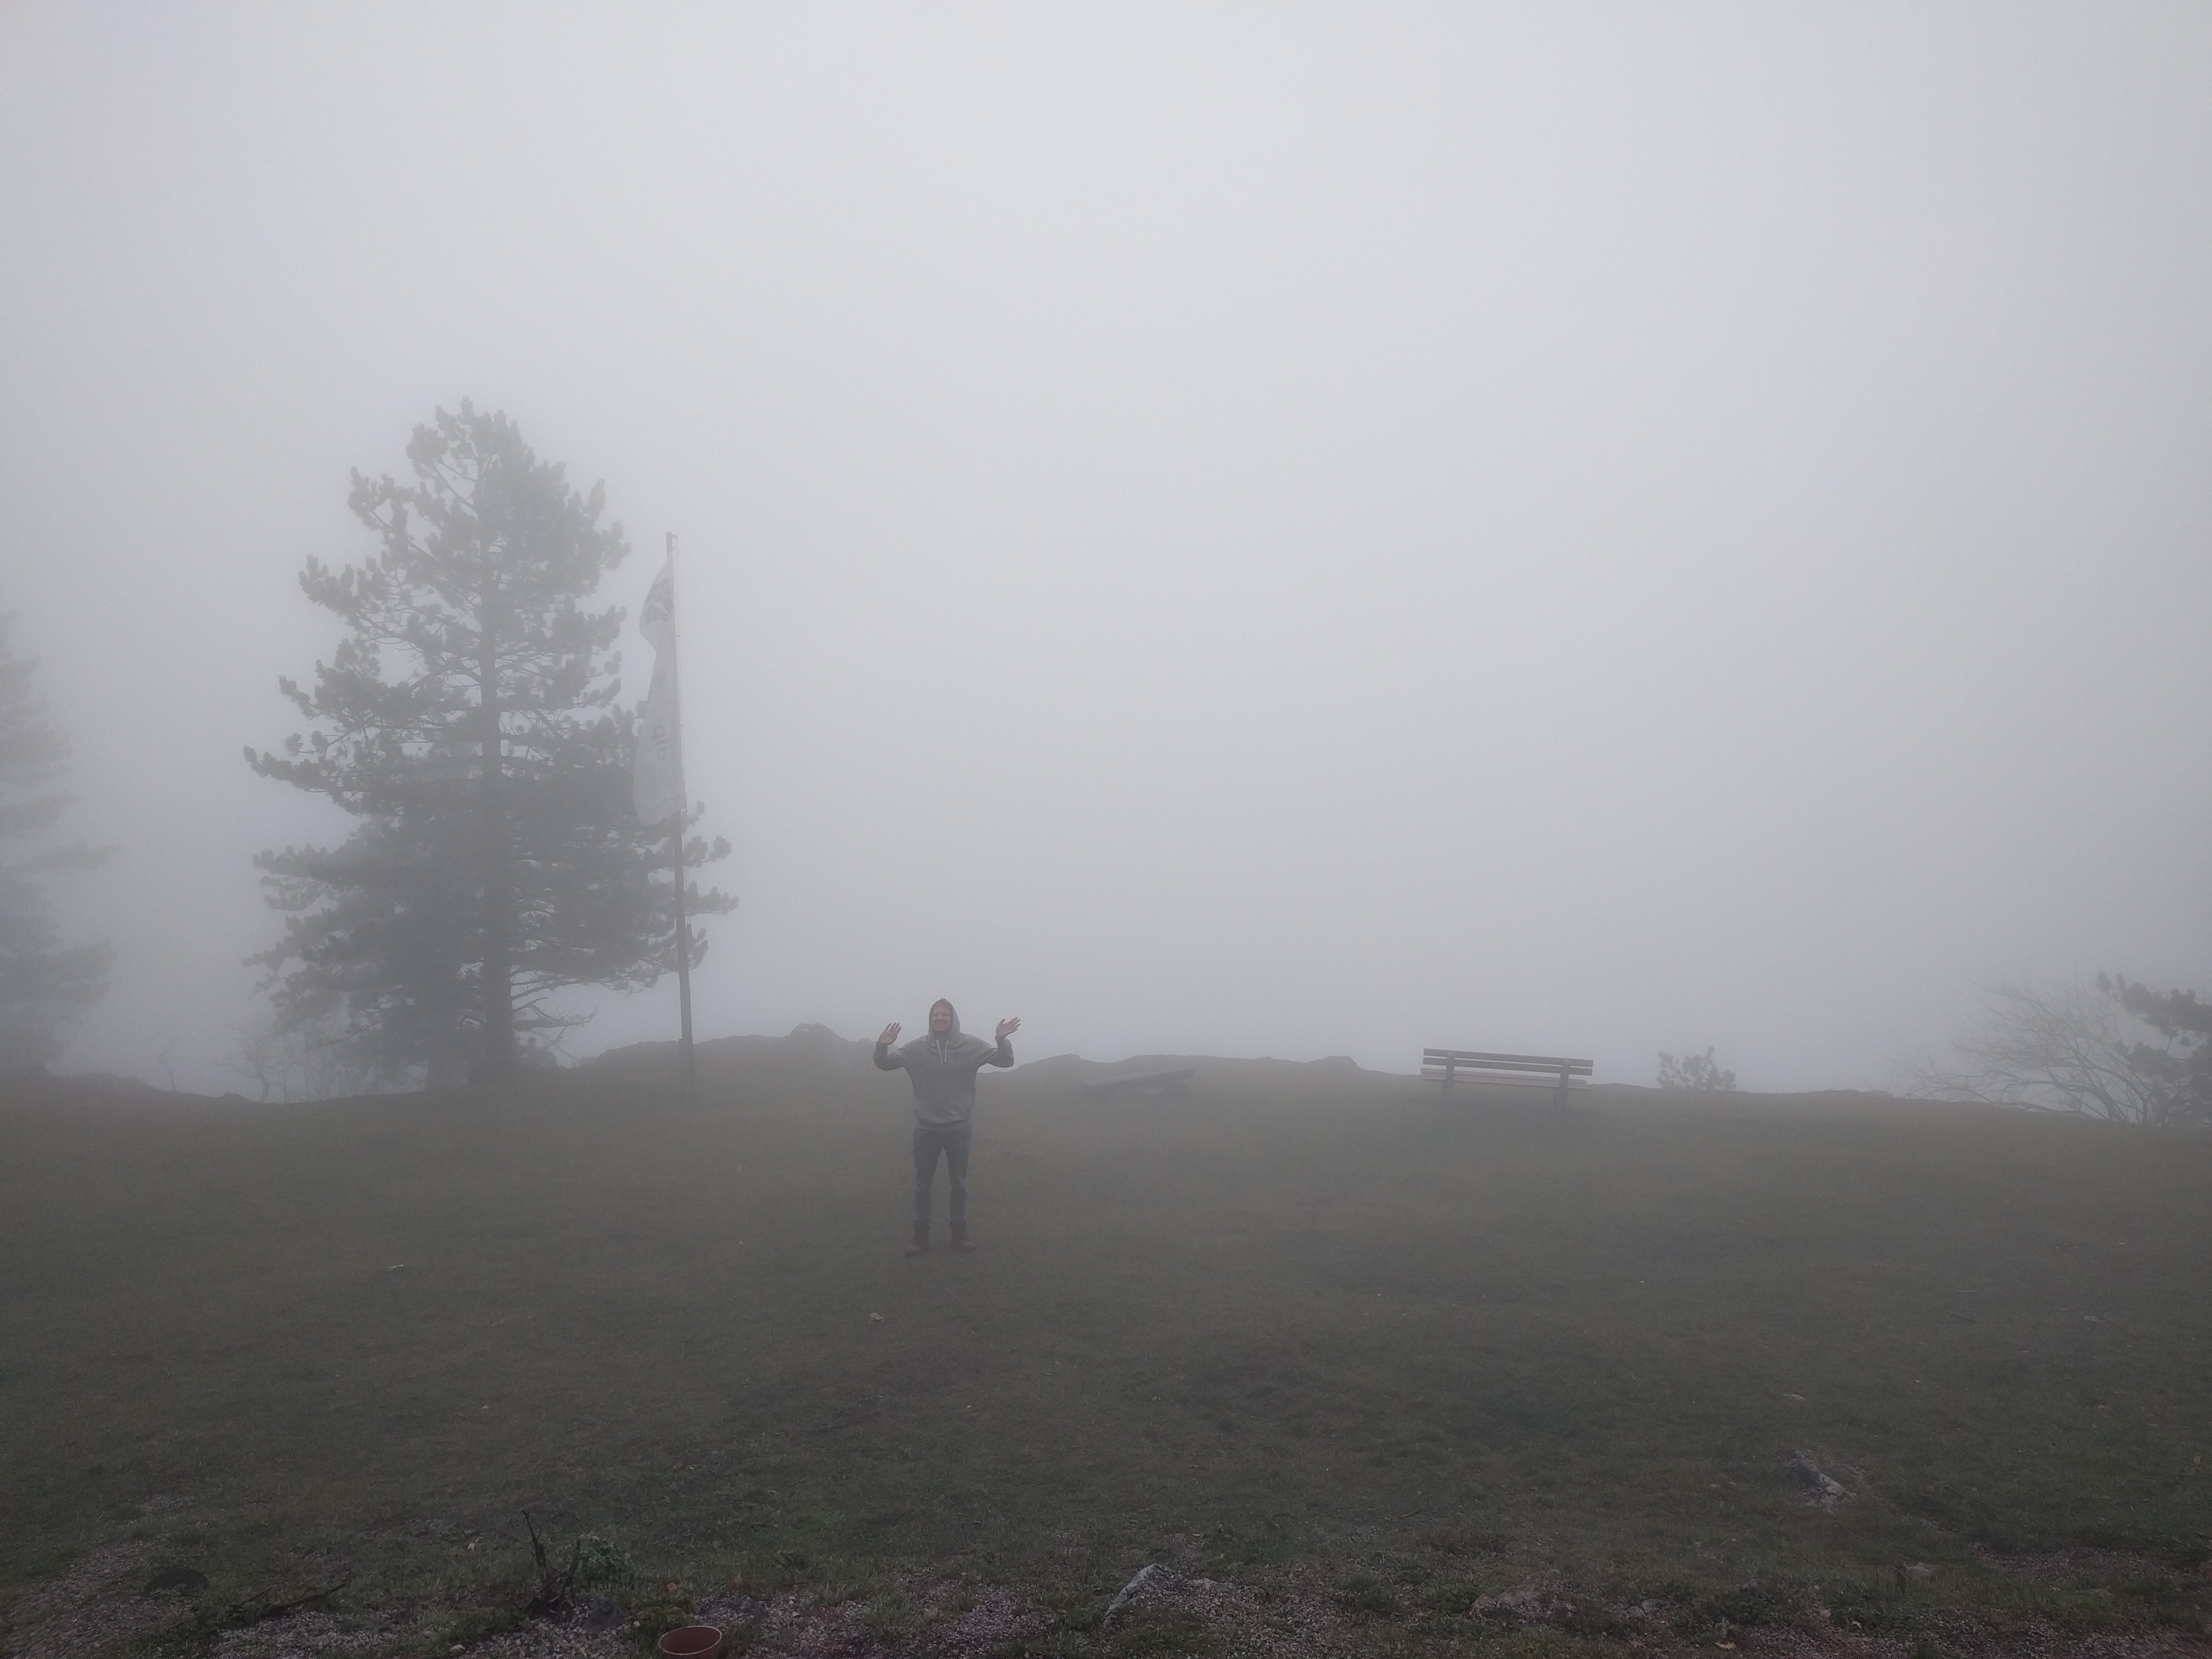 Georg in the fog